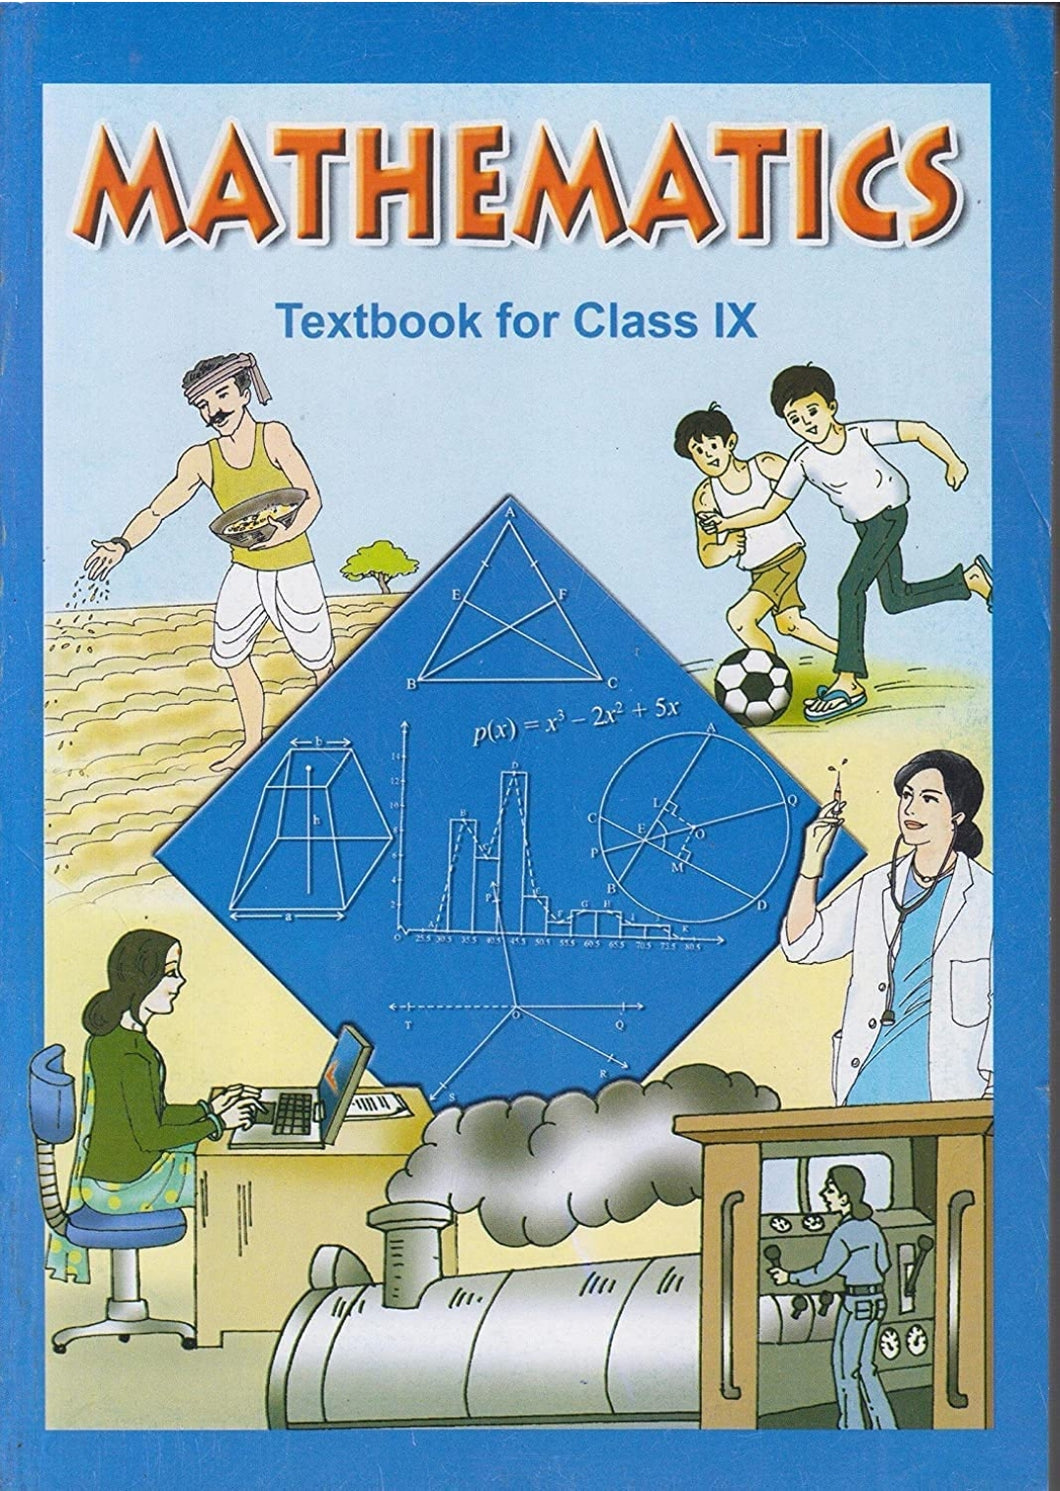 NCERT Mathematics for Class 9 - latest edition as per NCERT/CBSE - Booksfy